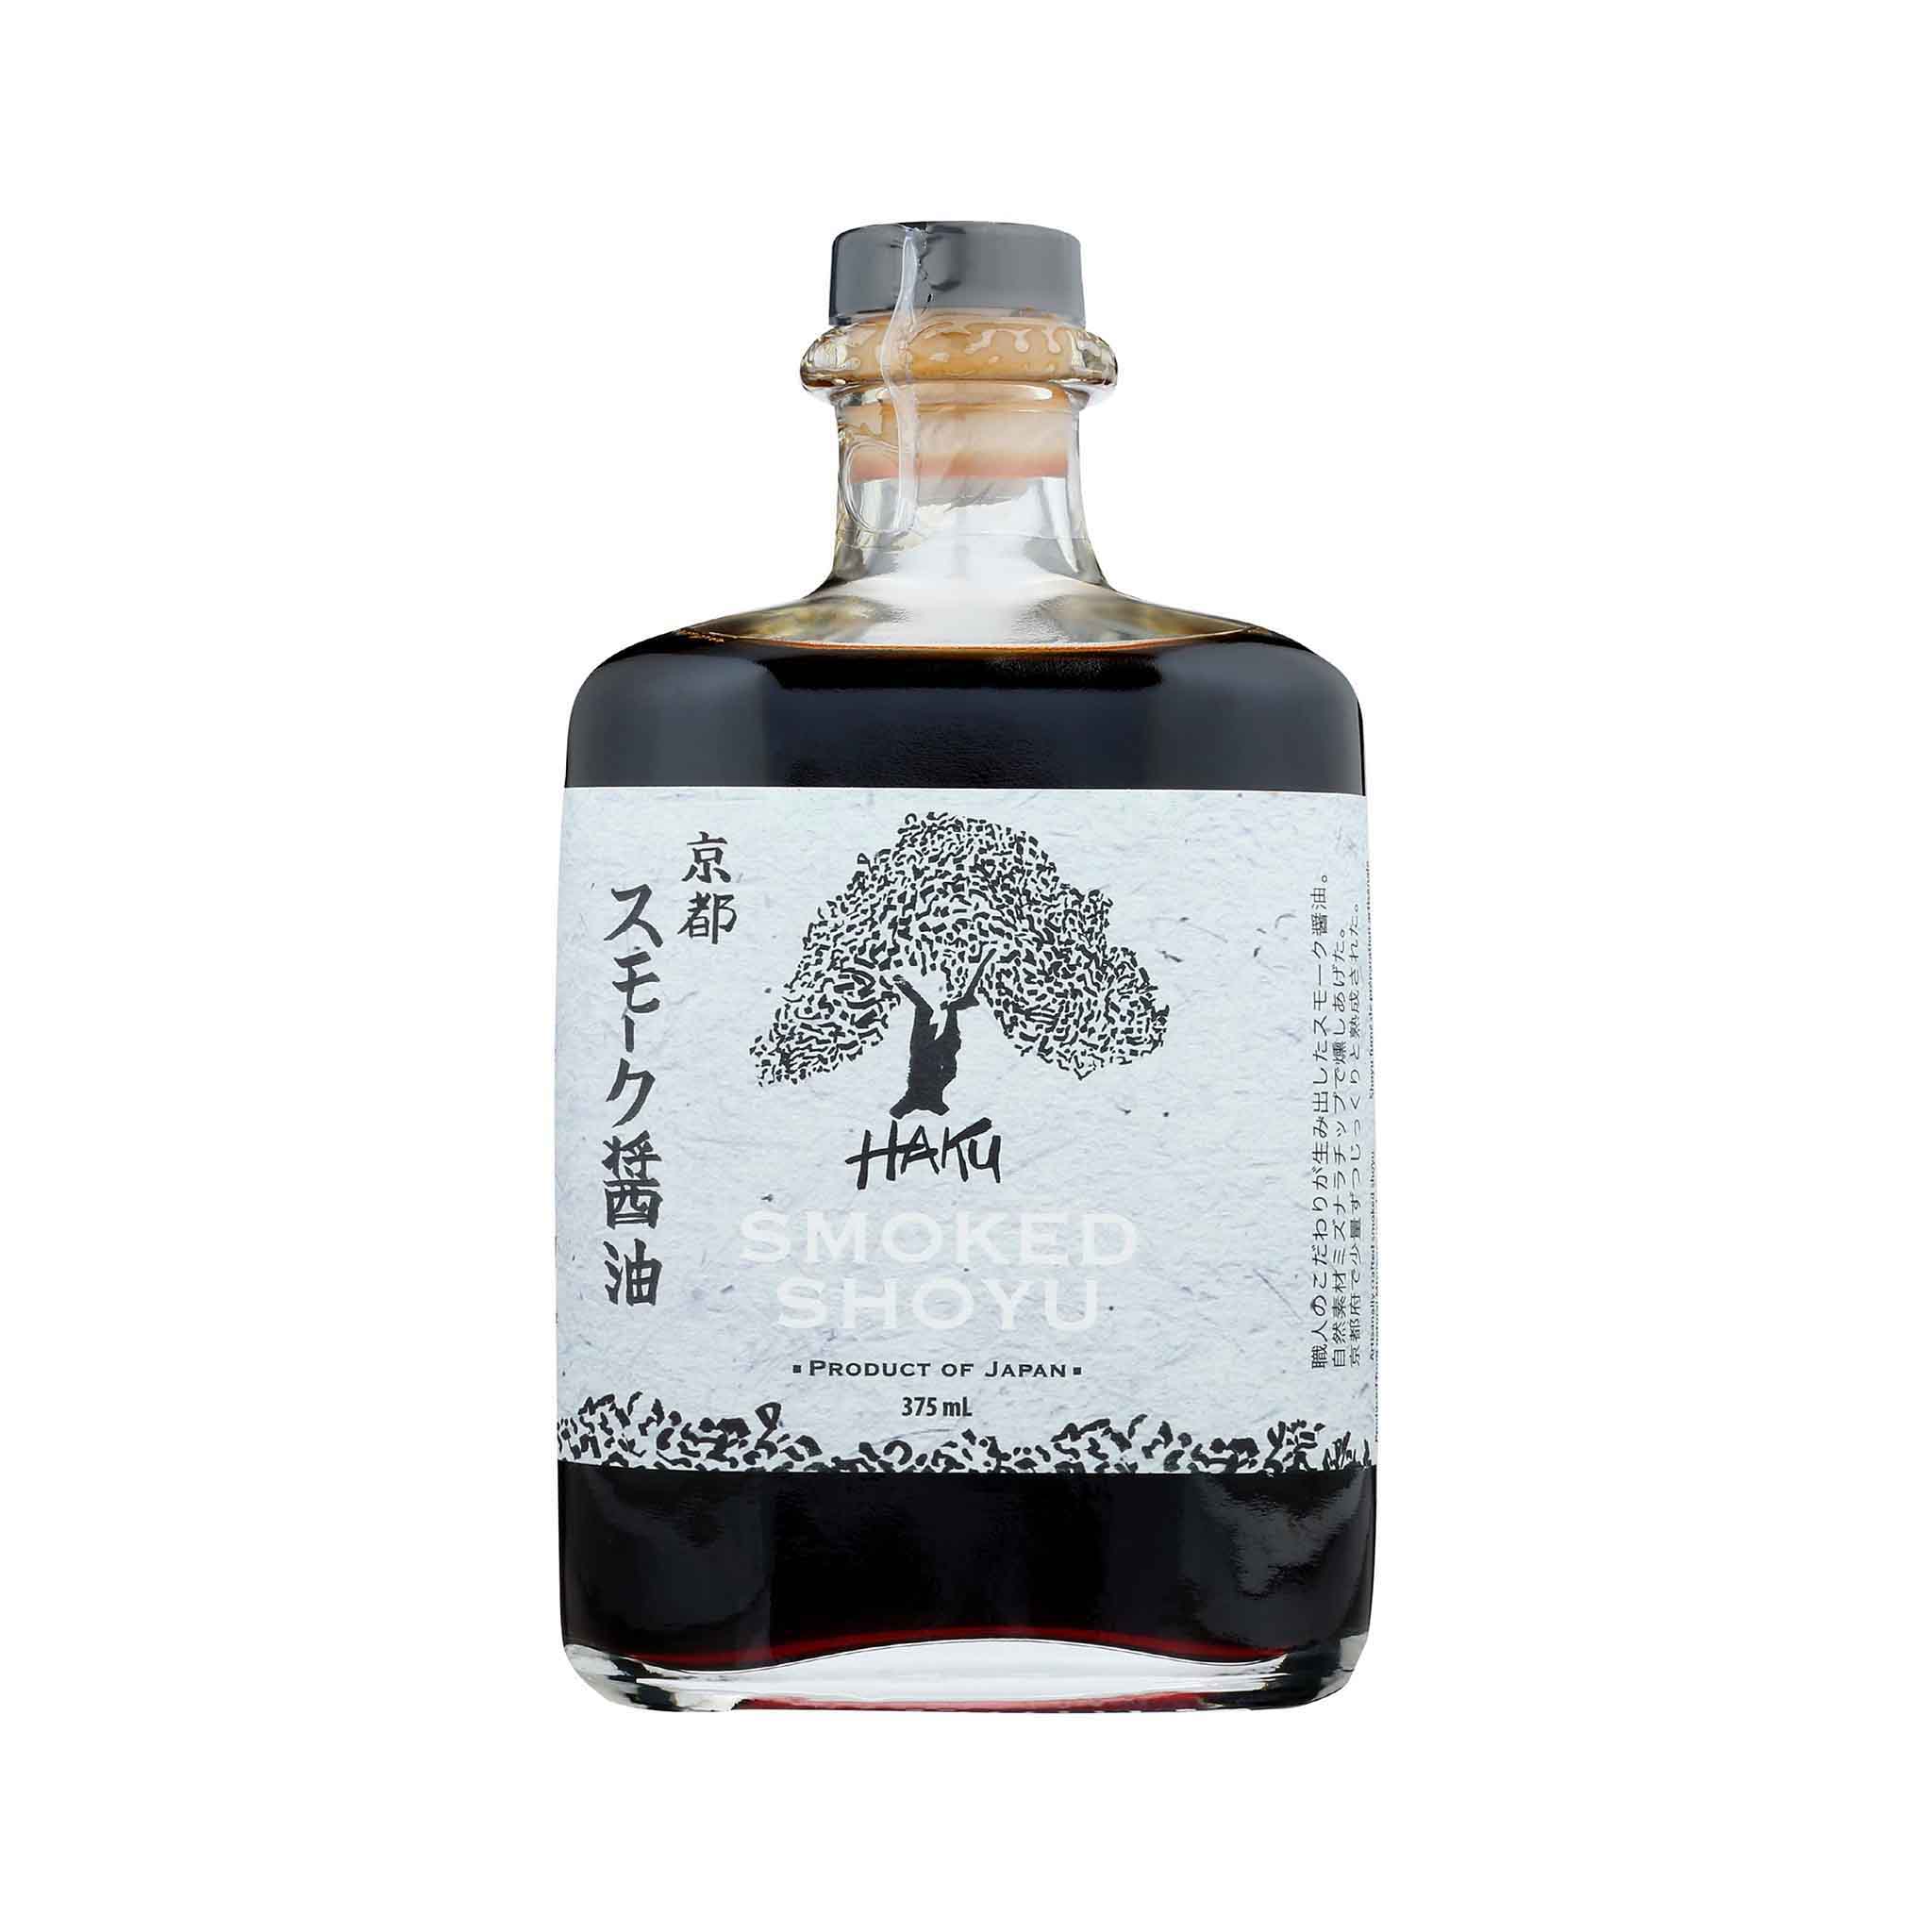 Haku Smoked Shoyu in a Glass Bottle